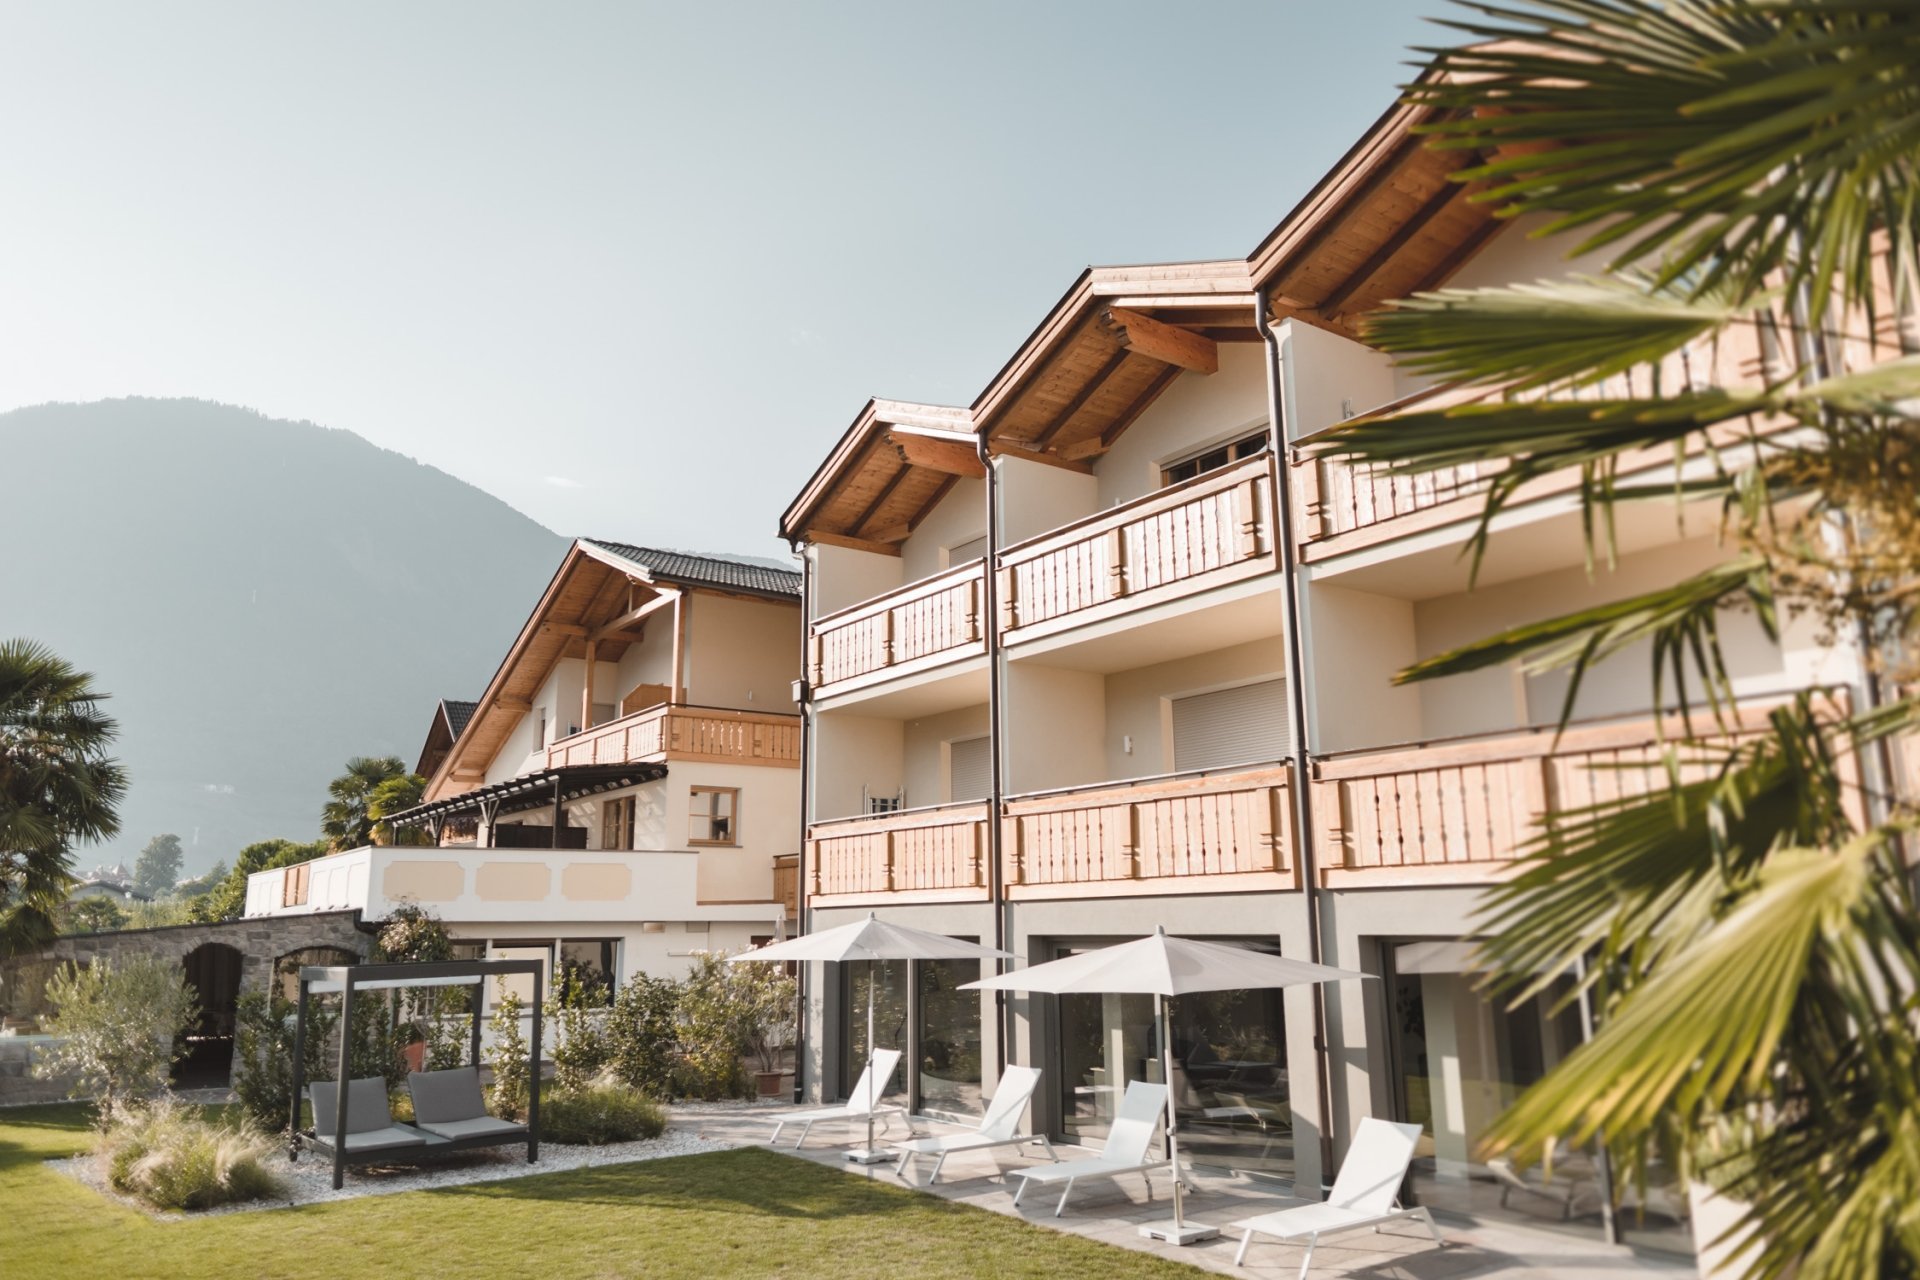 6 Tage Familie  Wellness zu Ostern – Im Tiefenbrunn  in Lana, Südtirol